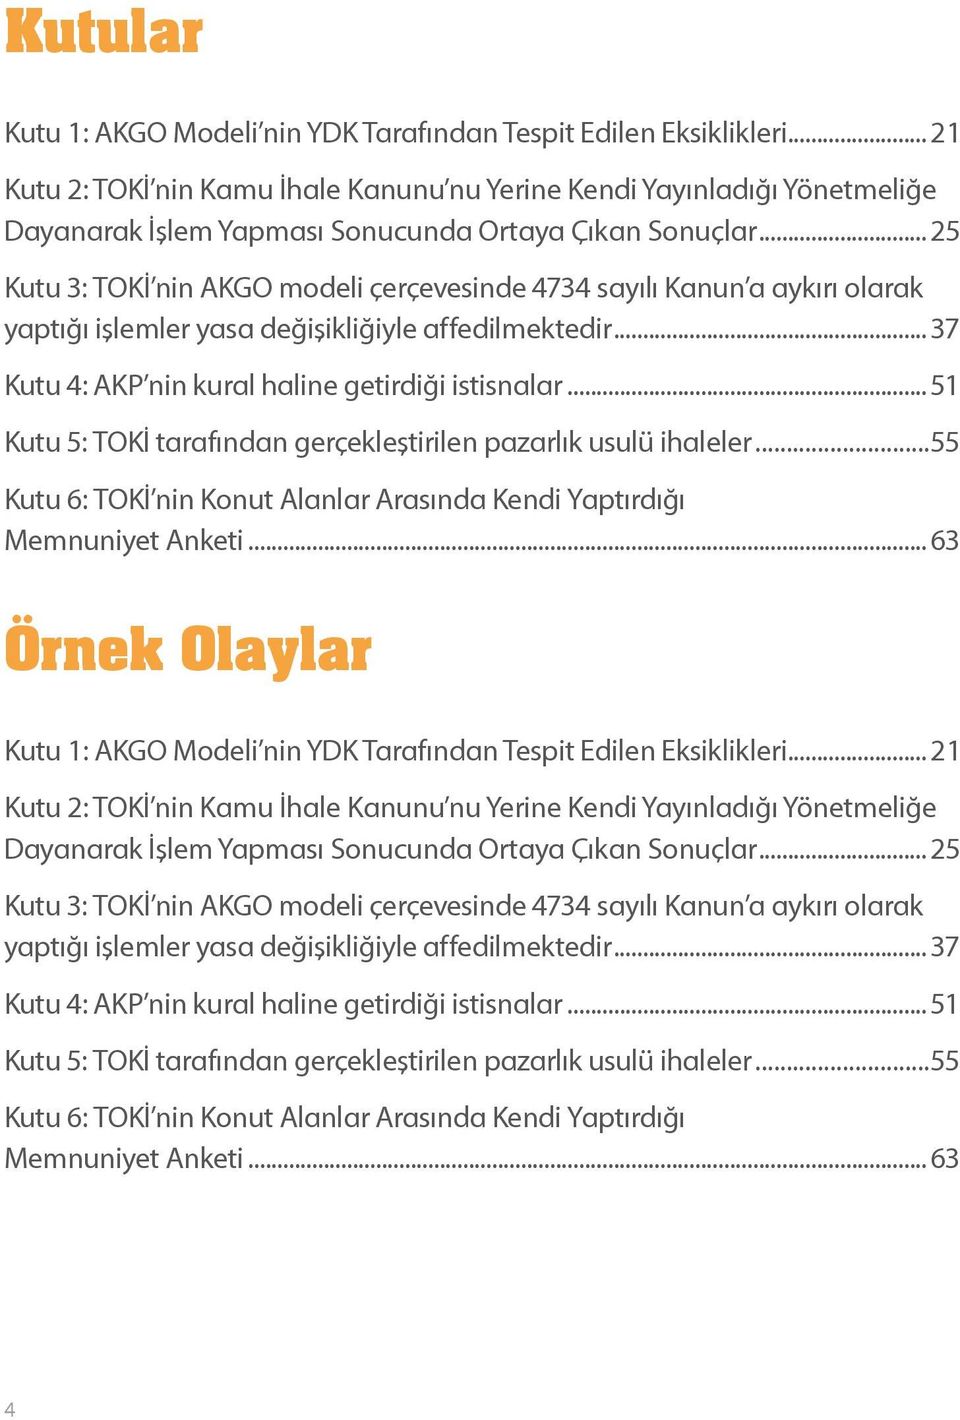 .. 25 Kutu 3: TOKİ nin AKGO modeli çerçevesinde 4734 sayılı Kanun a aykırı olarak yaptığı işlemler yasa değişikliğiyle affedilmektedir... 37 Kutu 4: AKP nin kural haline getirdiği istisnalar.